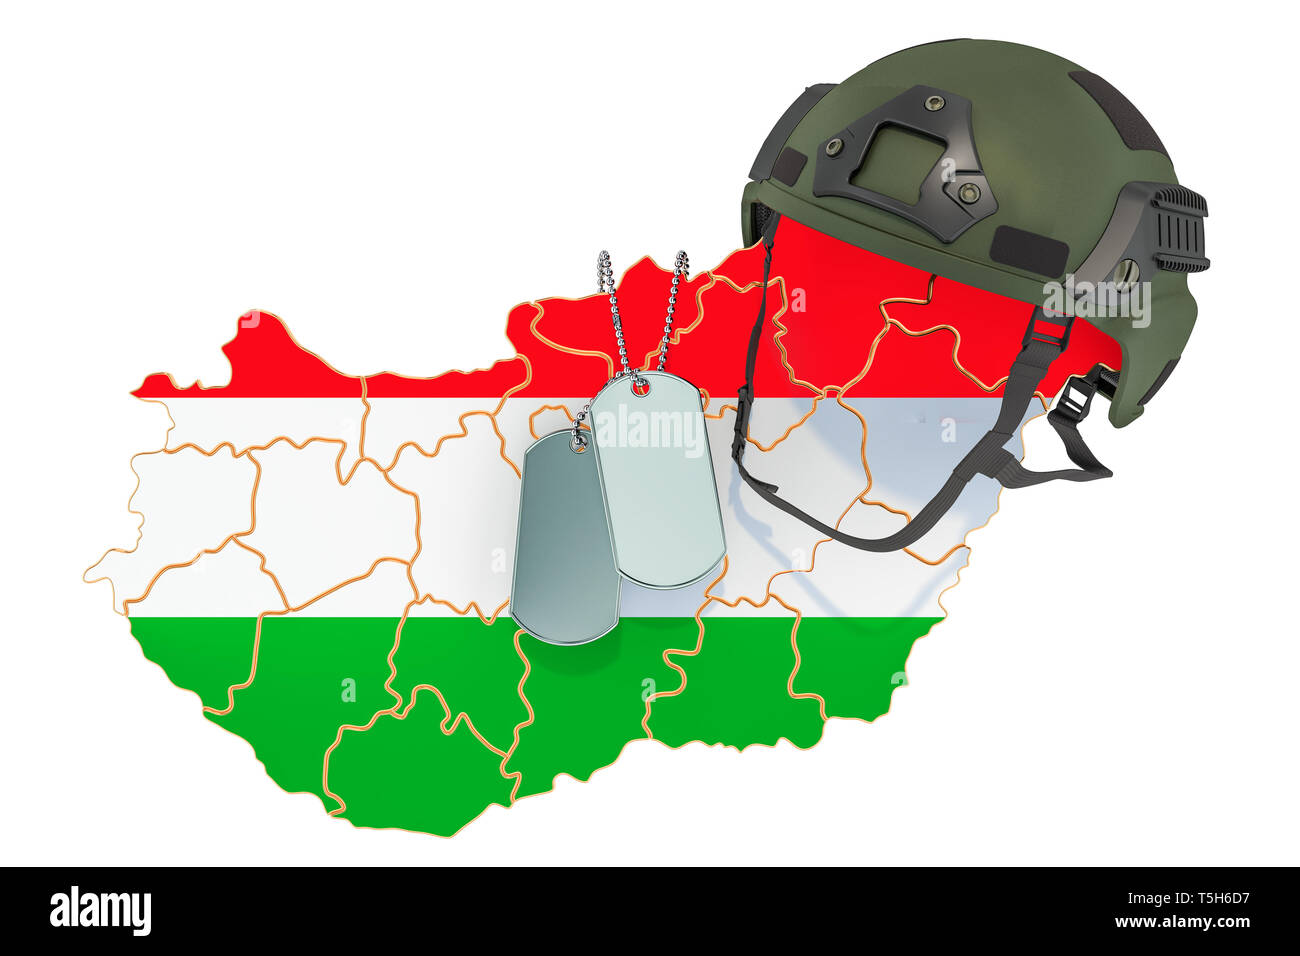 Ungarische militärische Kraft, Armee oder Krieg Konzept. 3D-Rendering auf weißem Hintergrund Stockfoto